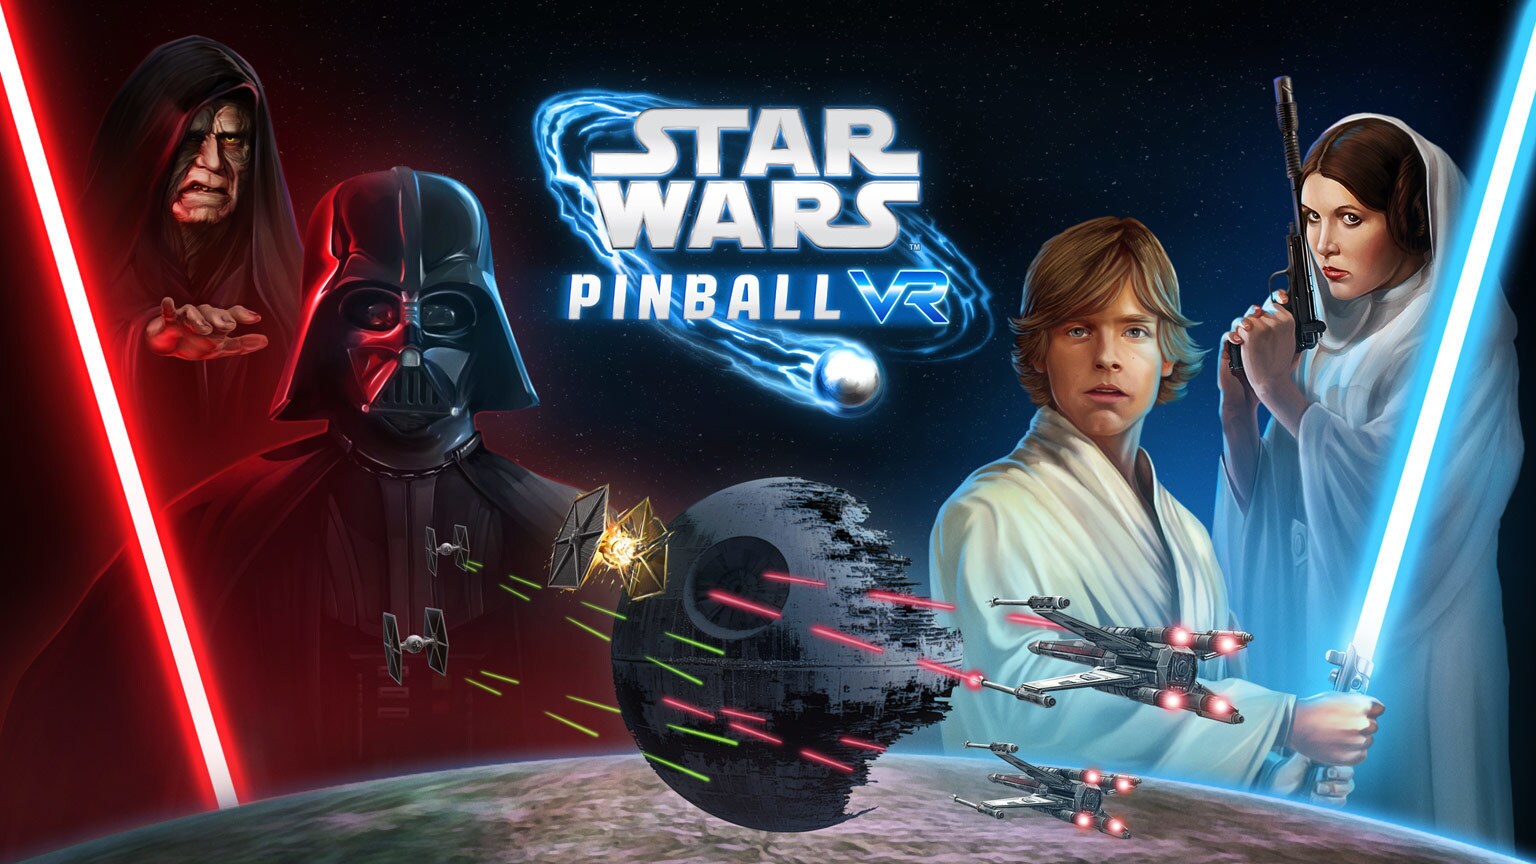 Star Wars Pinball VR Coming April 29